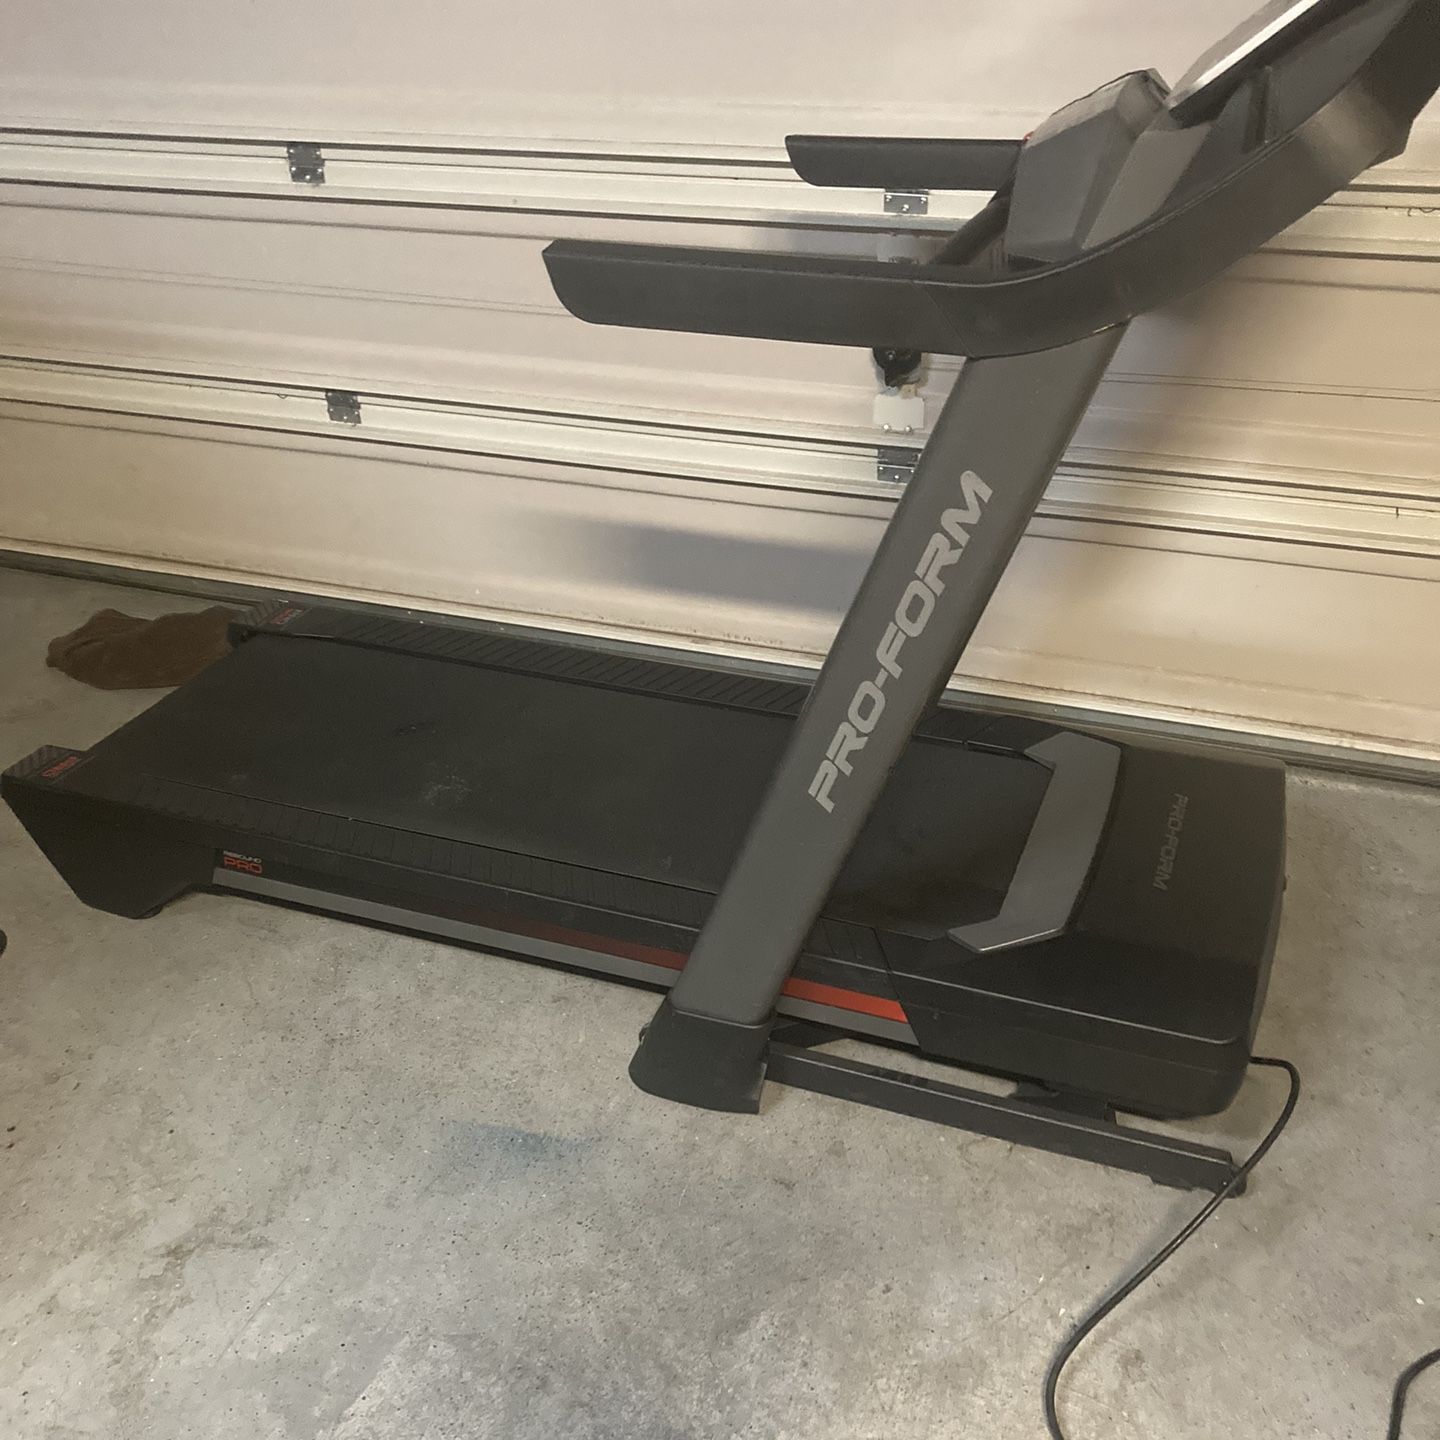 Proform Pro 5000 Treadmill, Almost New 